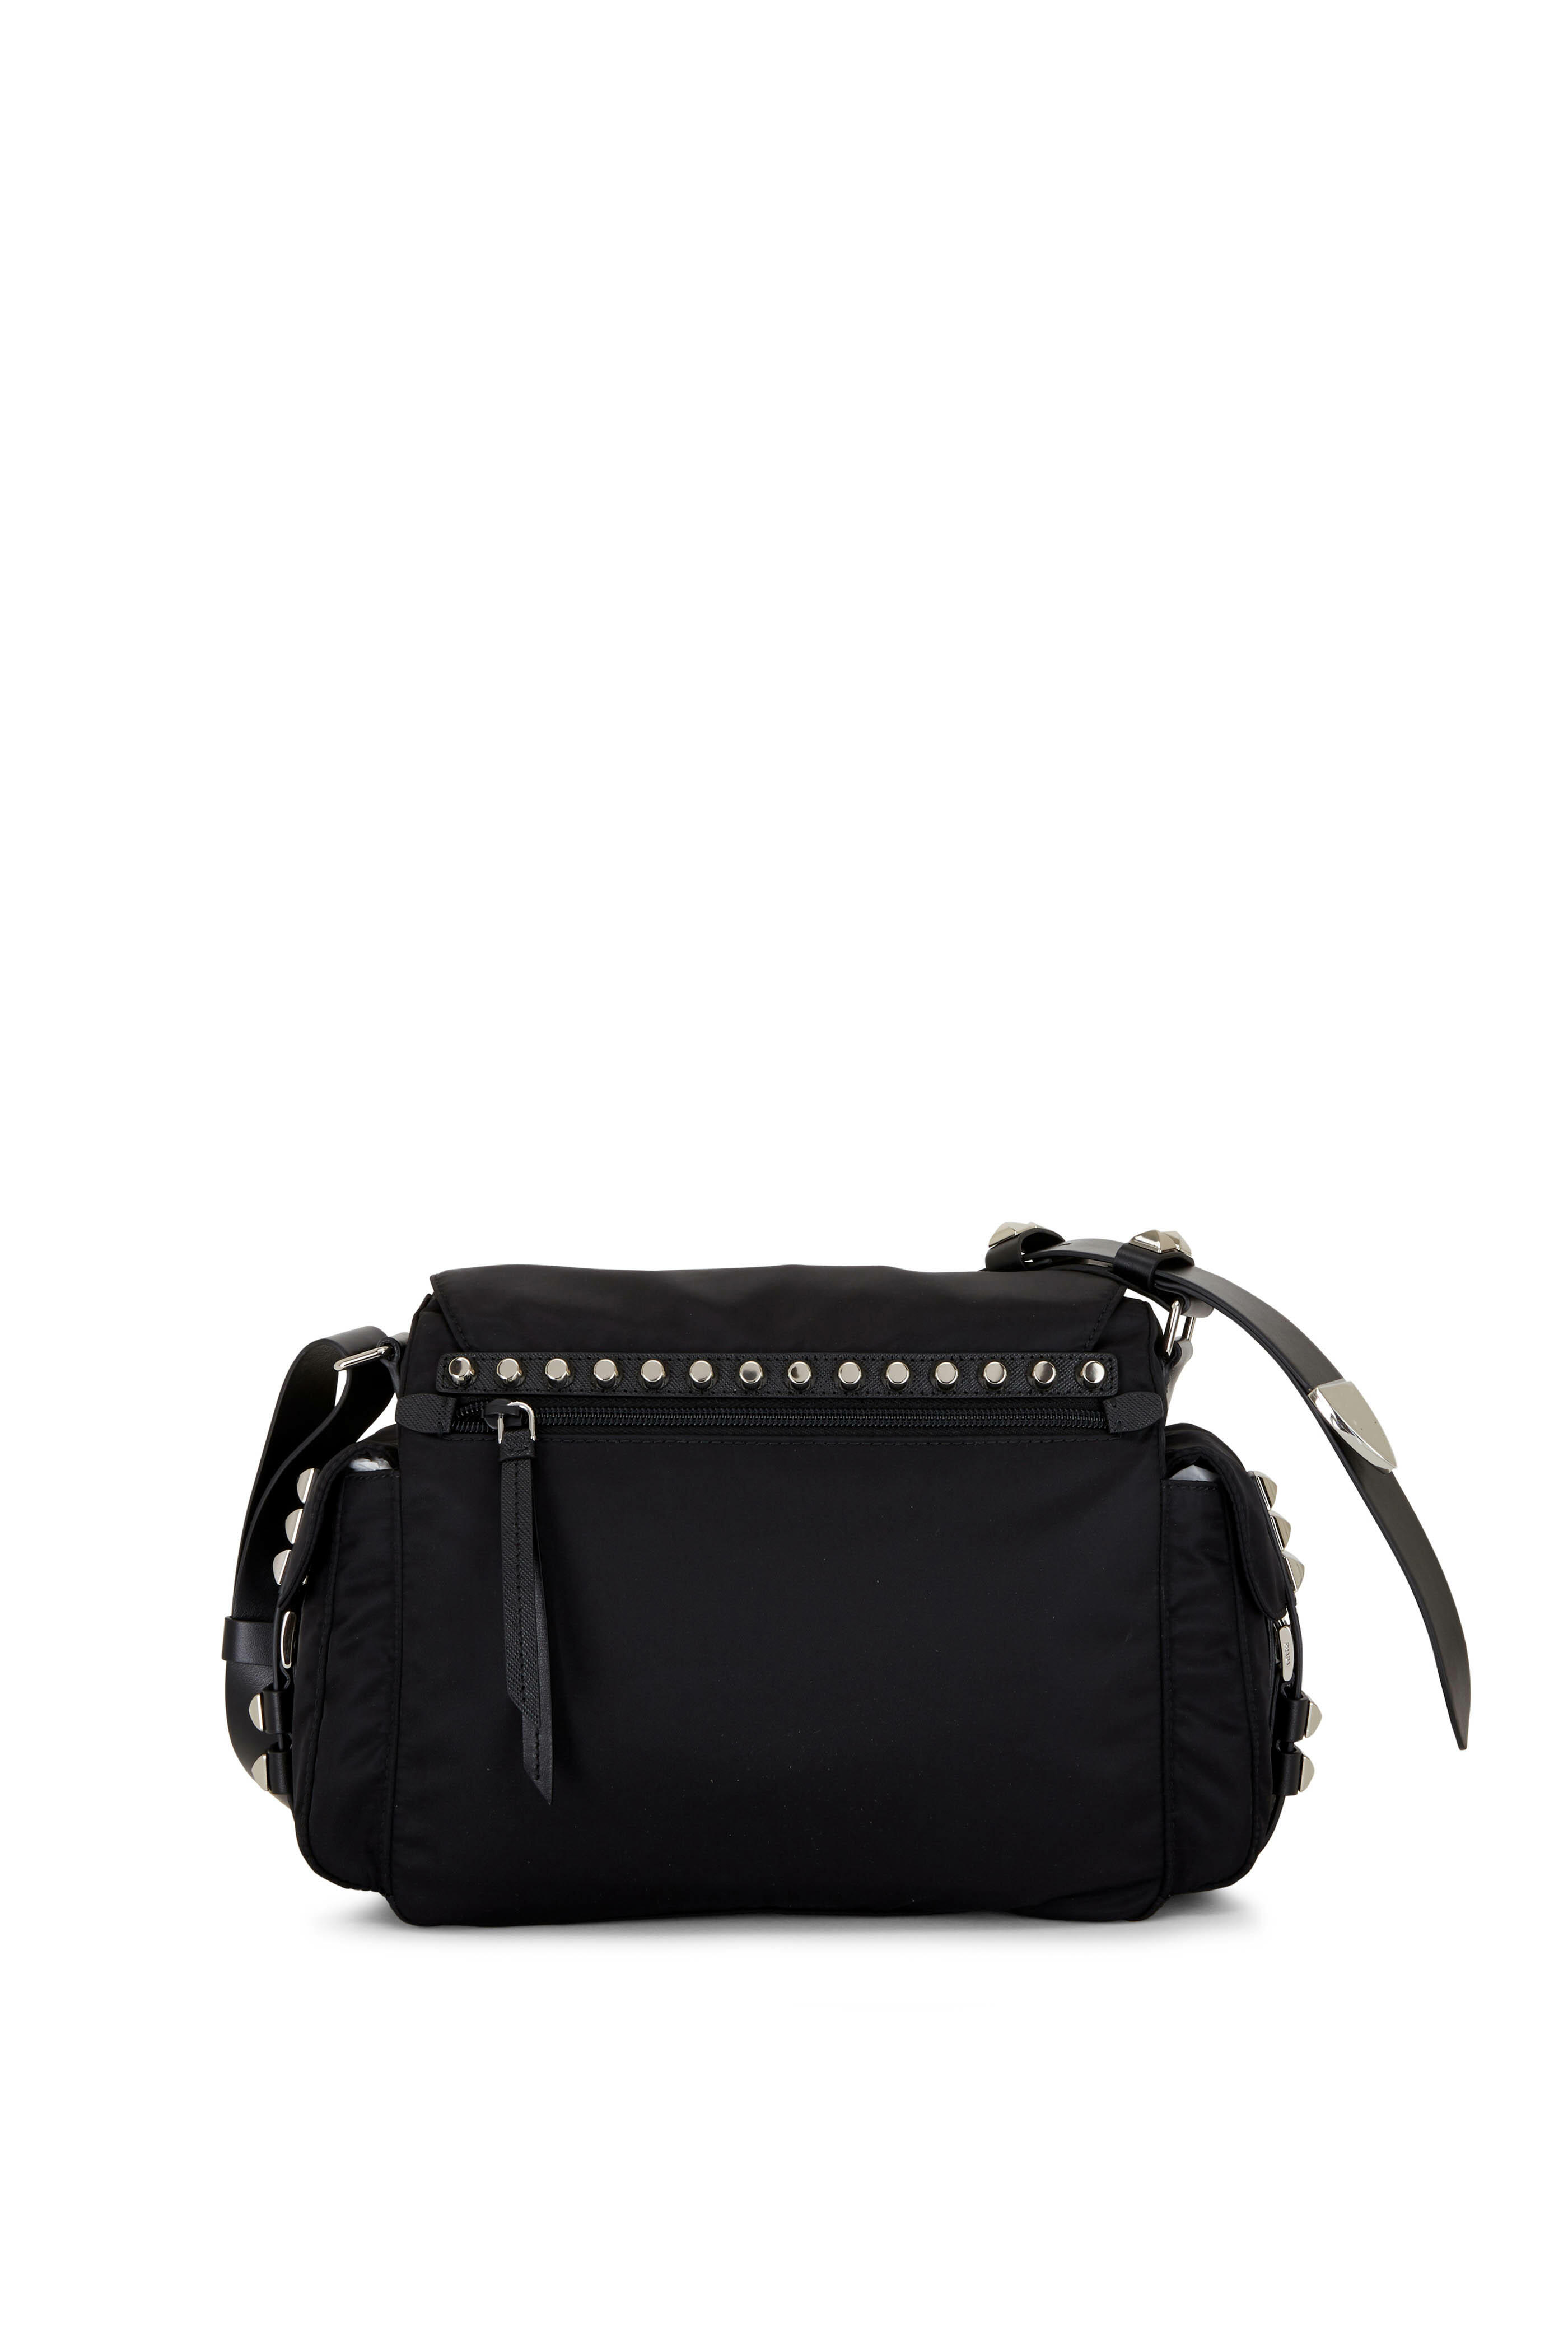 Prada Stud-embellished Strap Nylon Cross-body Bag in Black